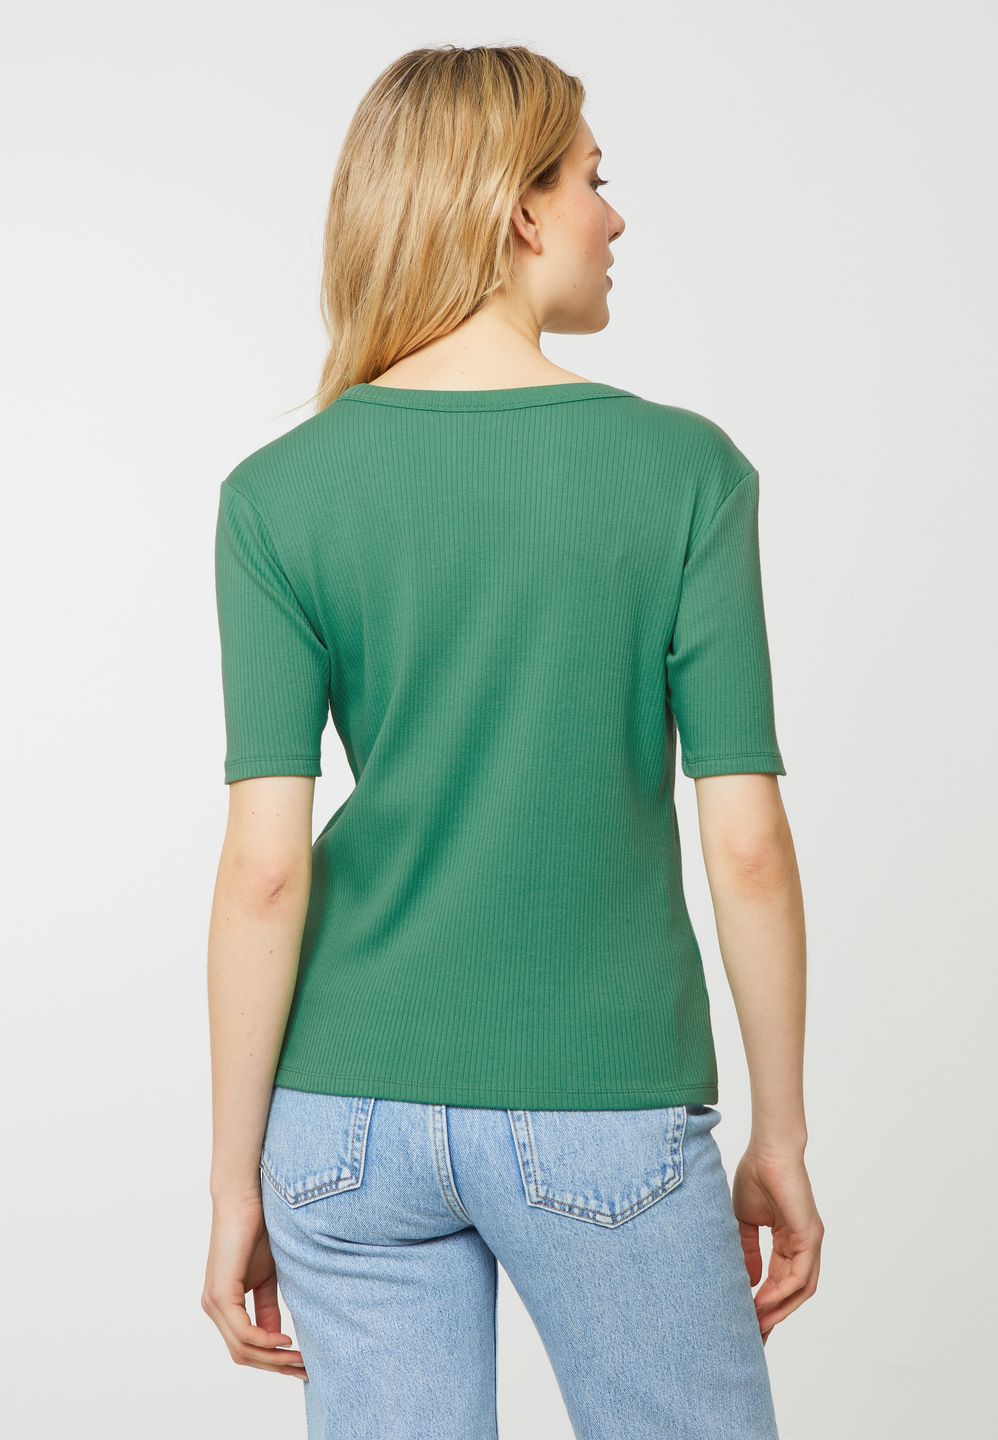 T-Shirt Daphne jade green von recolution